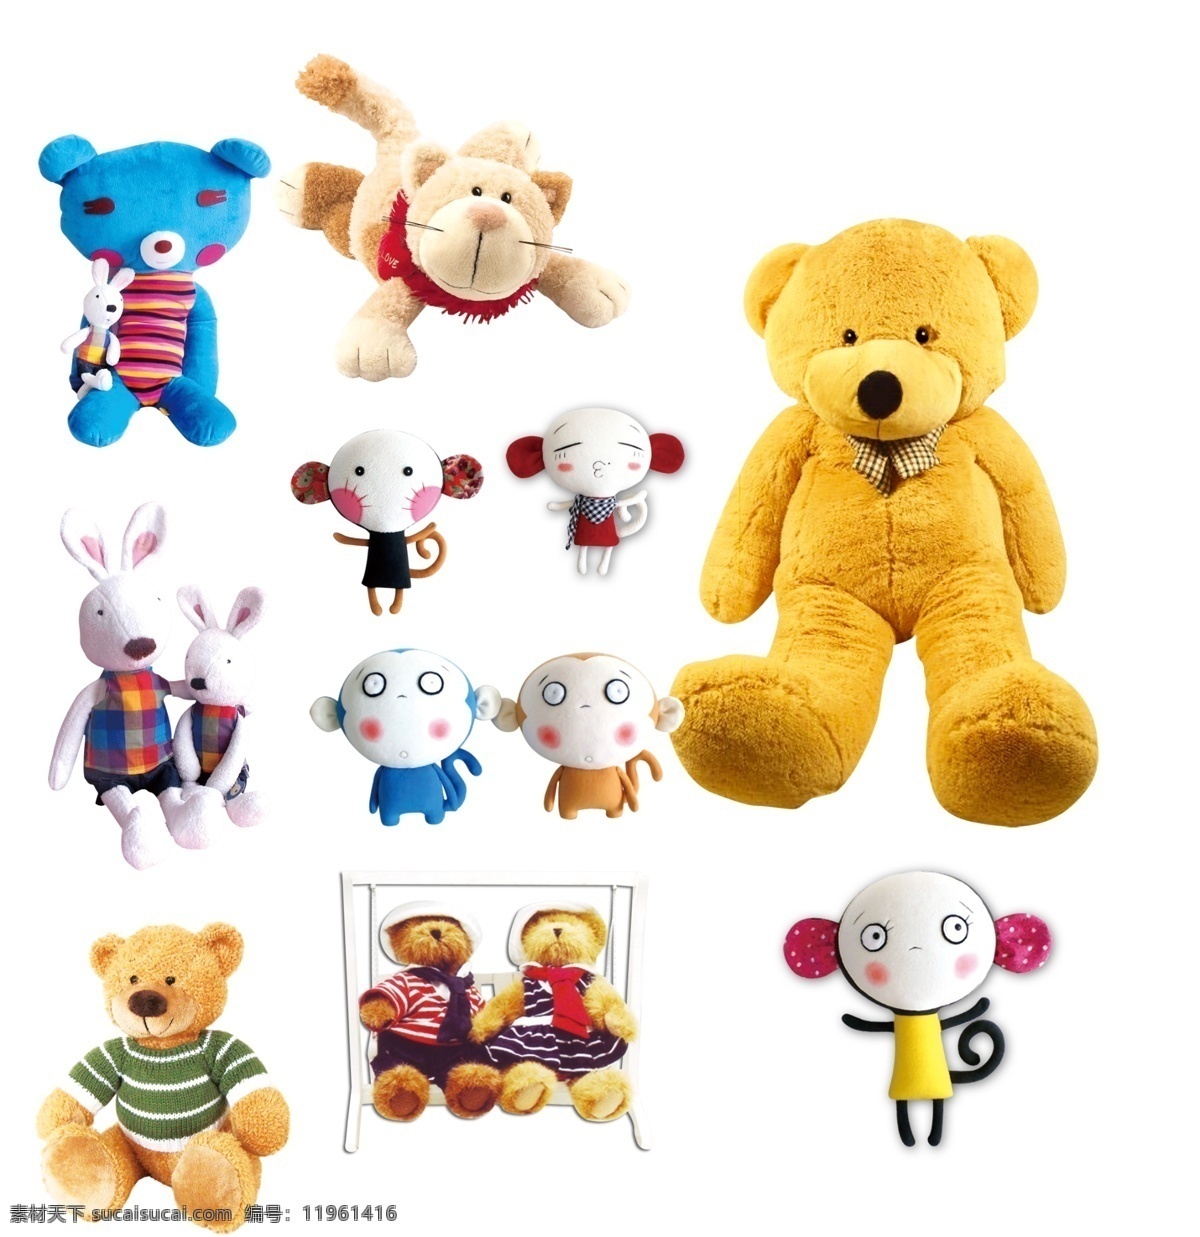 玩具 毛绒 小熊 毛绒小熊 儿童玩具 玩具素材 小玩具 布娃娃 毛绒熊 可爱 娃娃 泰迪熊 卡通素材 毛绒玩具兔子 小猴子 毛绒玩具猴子